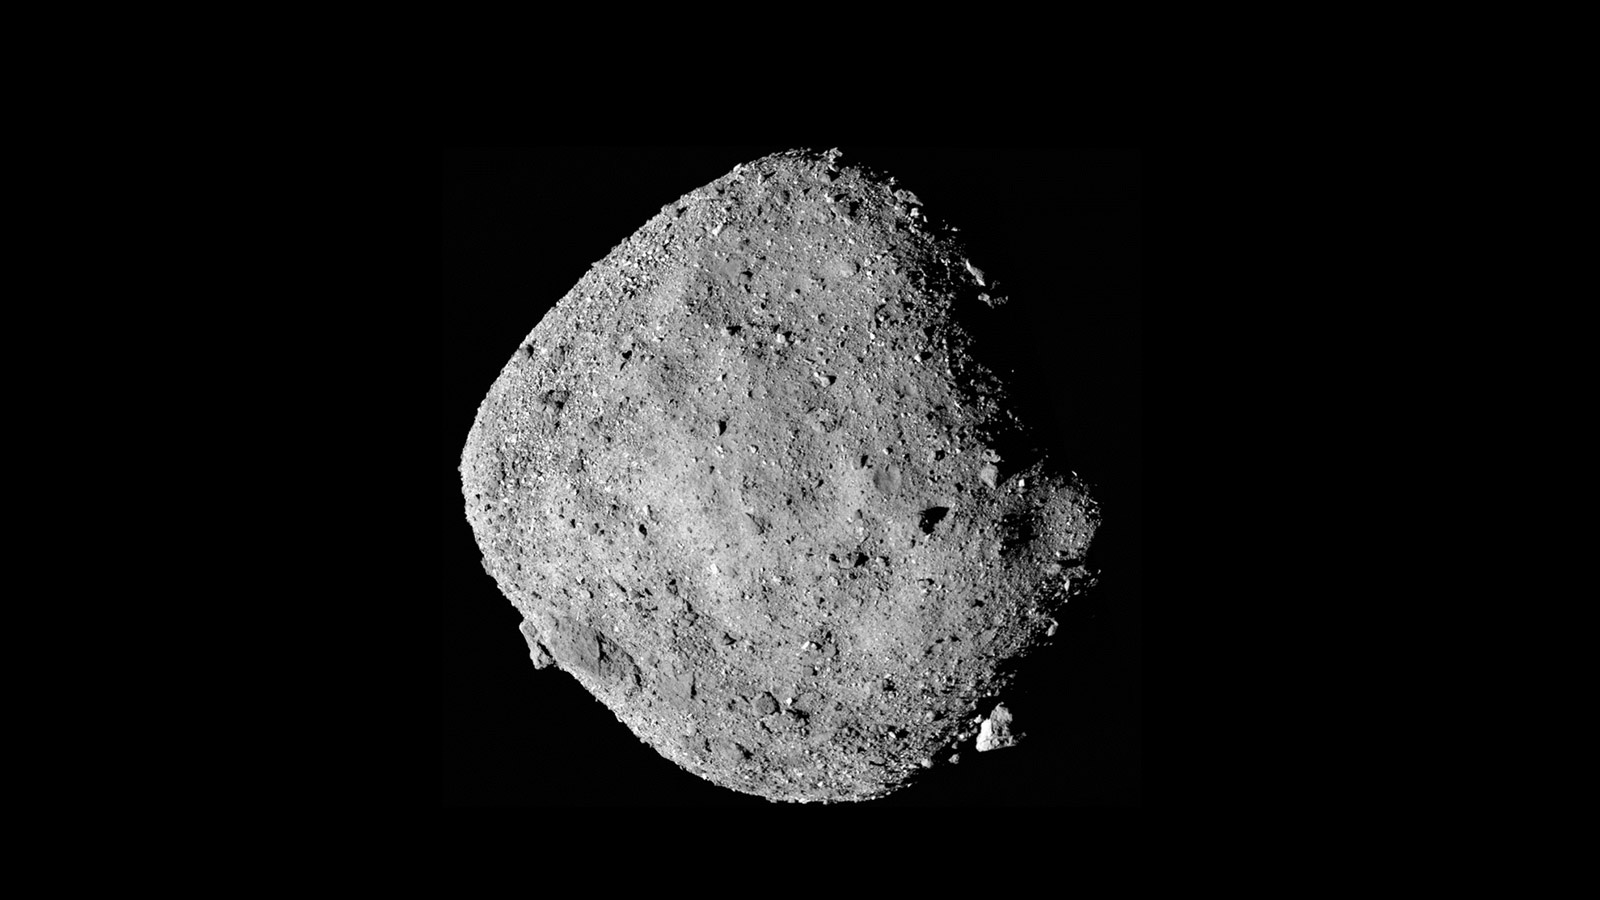 bennu asteroid